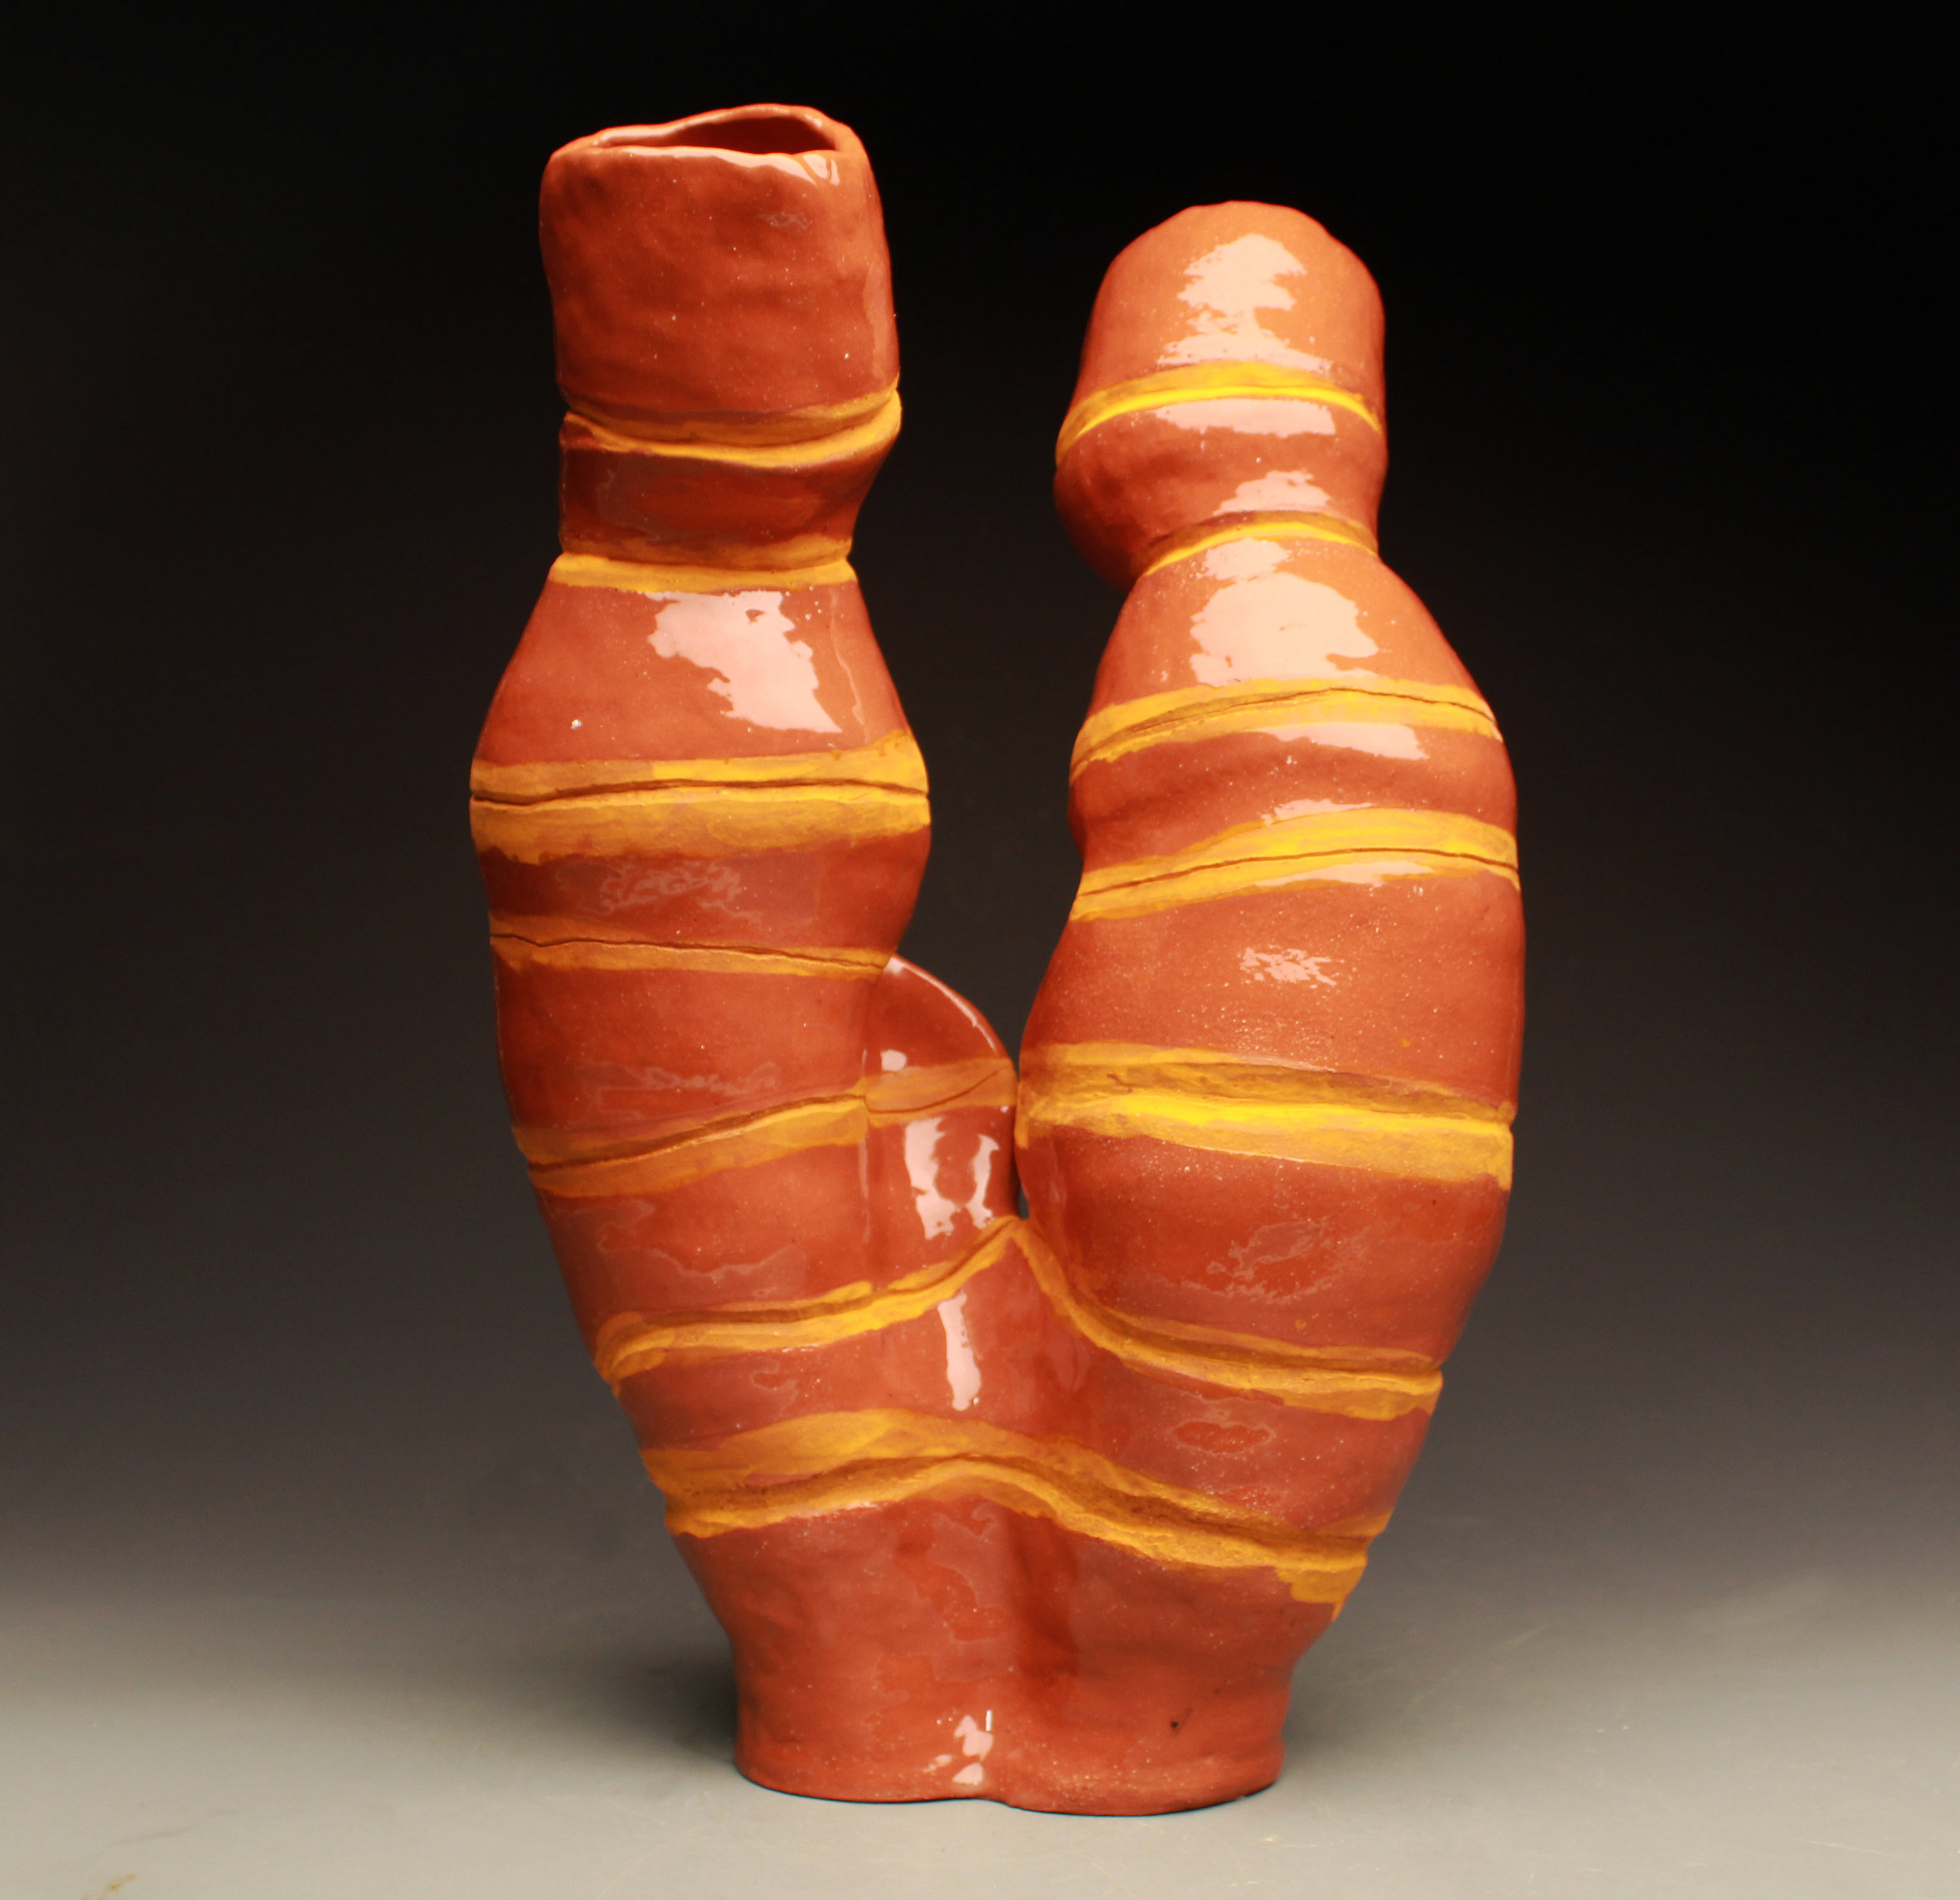 Intro to Handbuilding - Ceramics